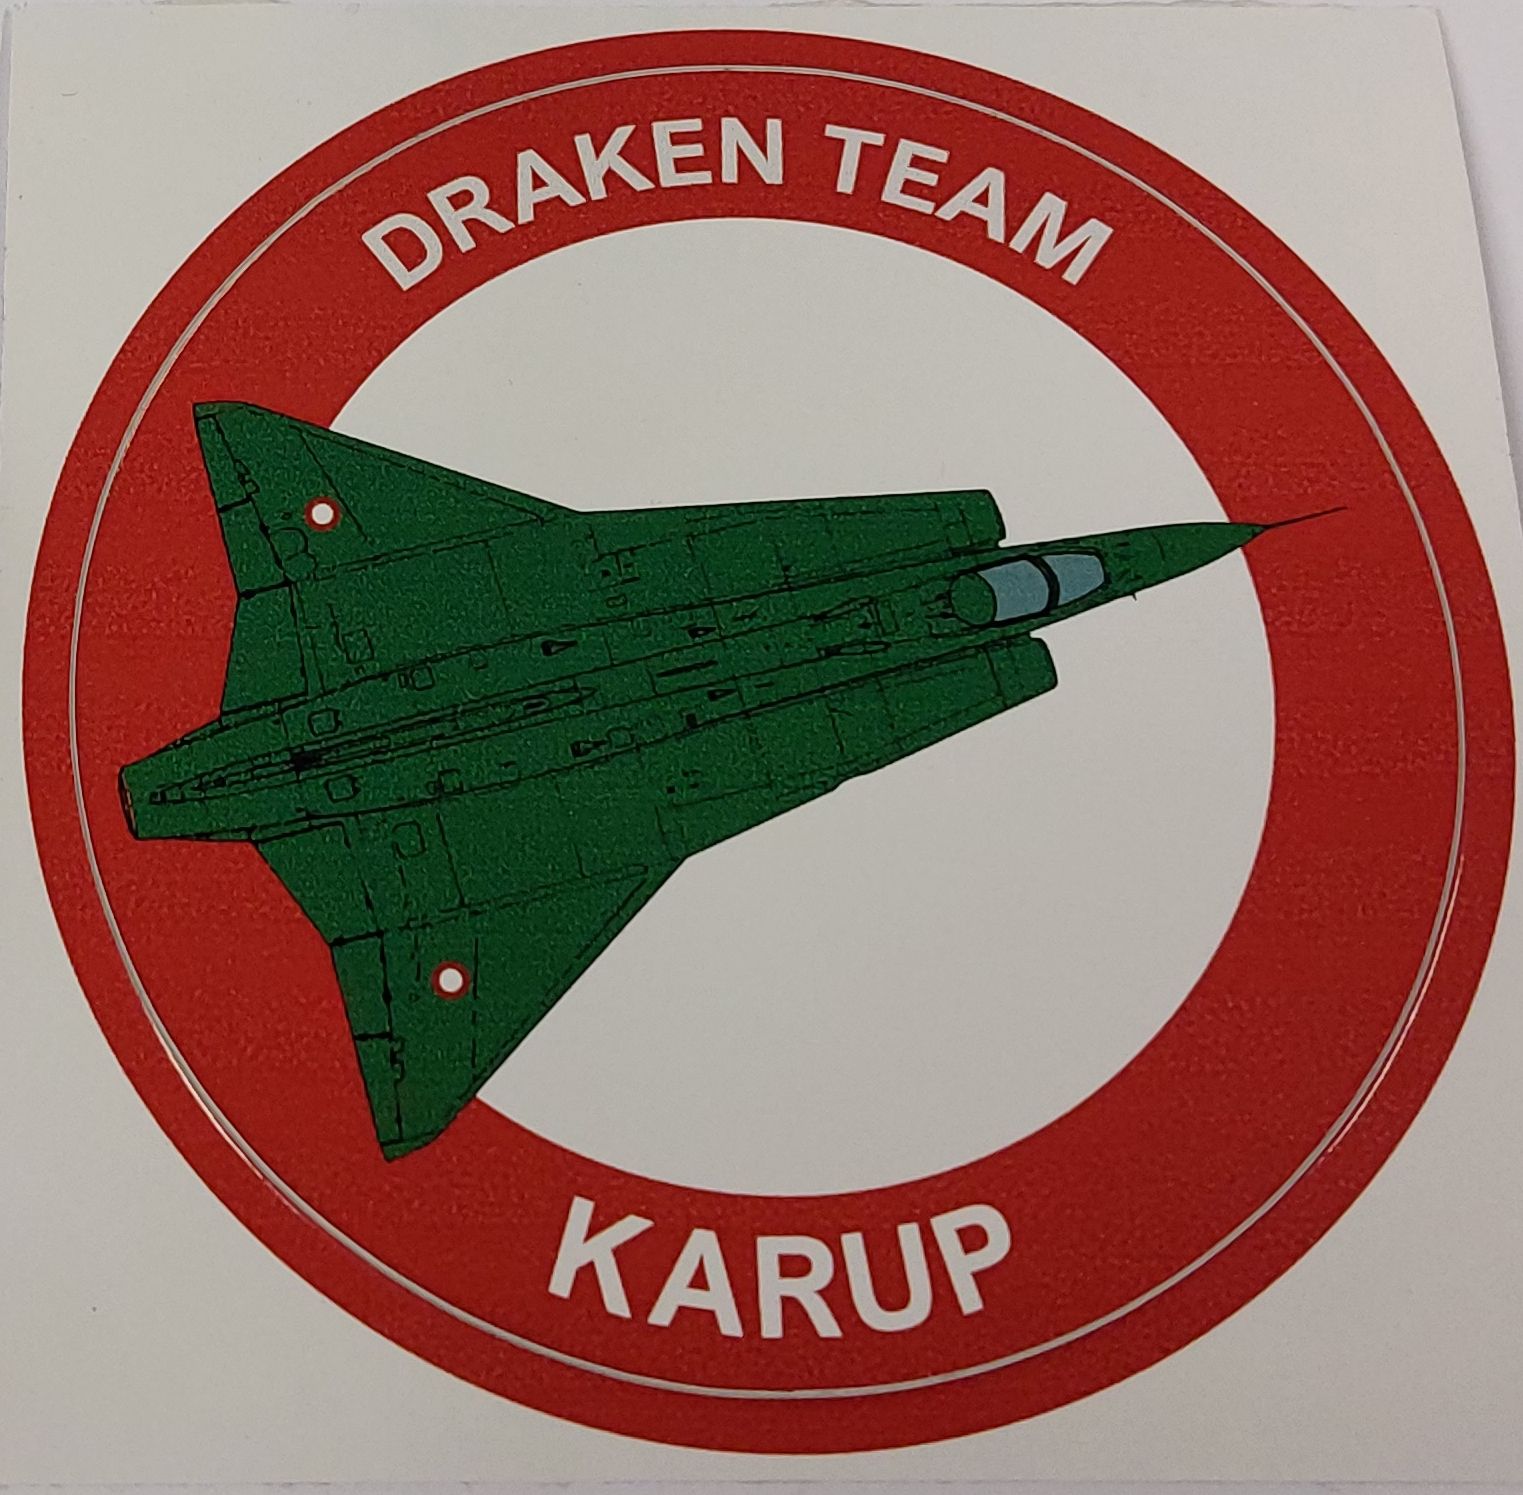 Draken Team Karup Labels